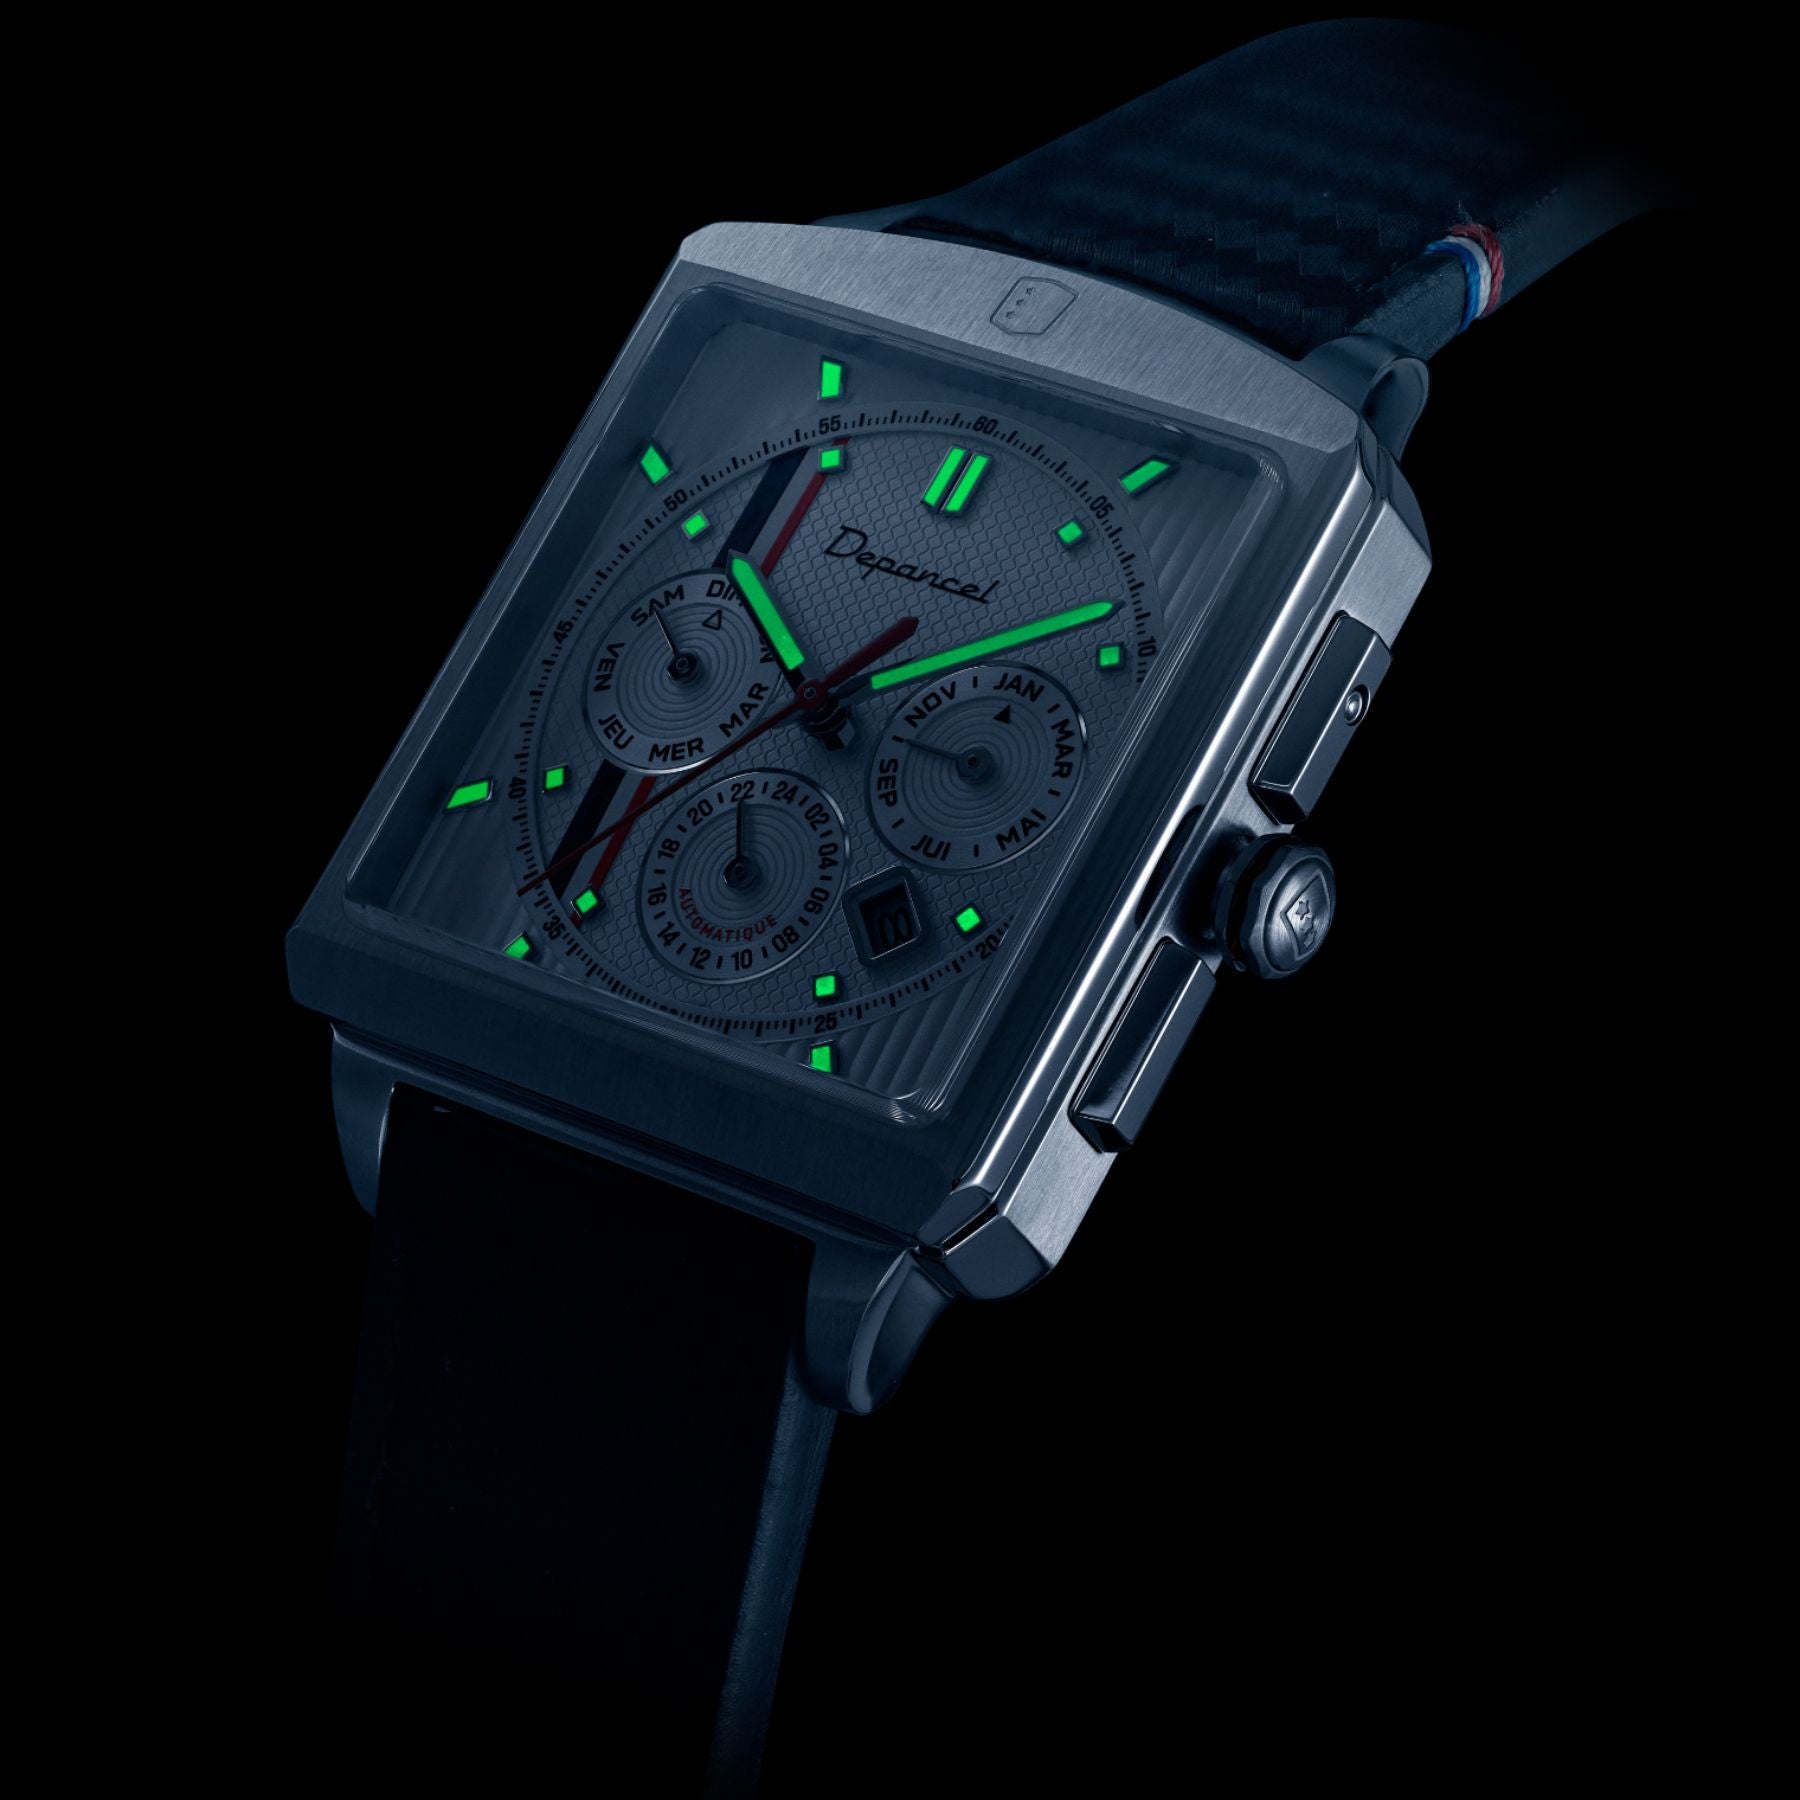 Serie-R - F-back - Metallic Green - montre française homme automatique - calendrier carré